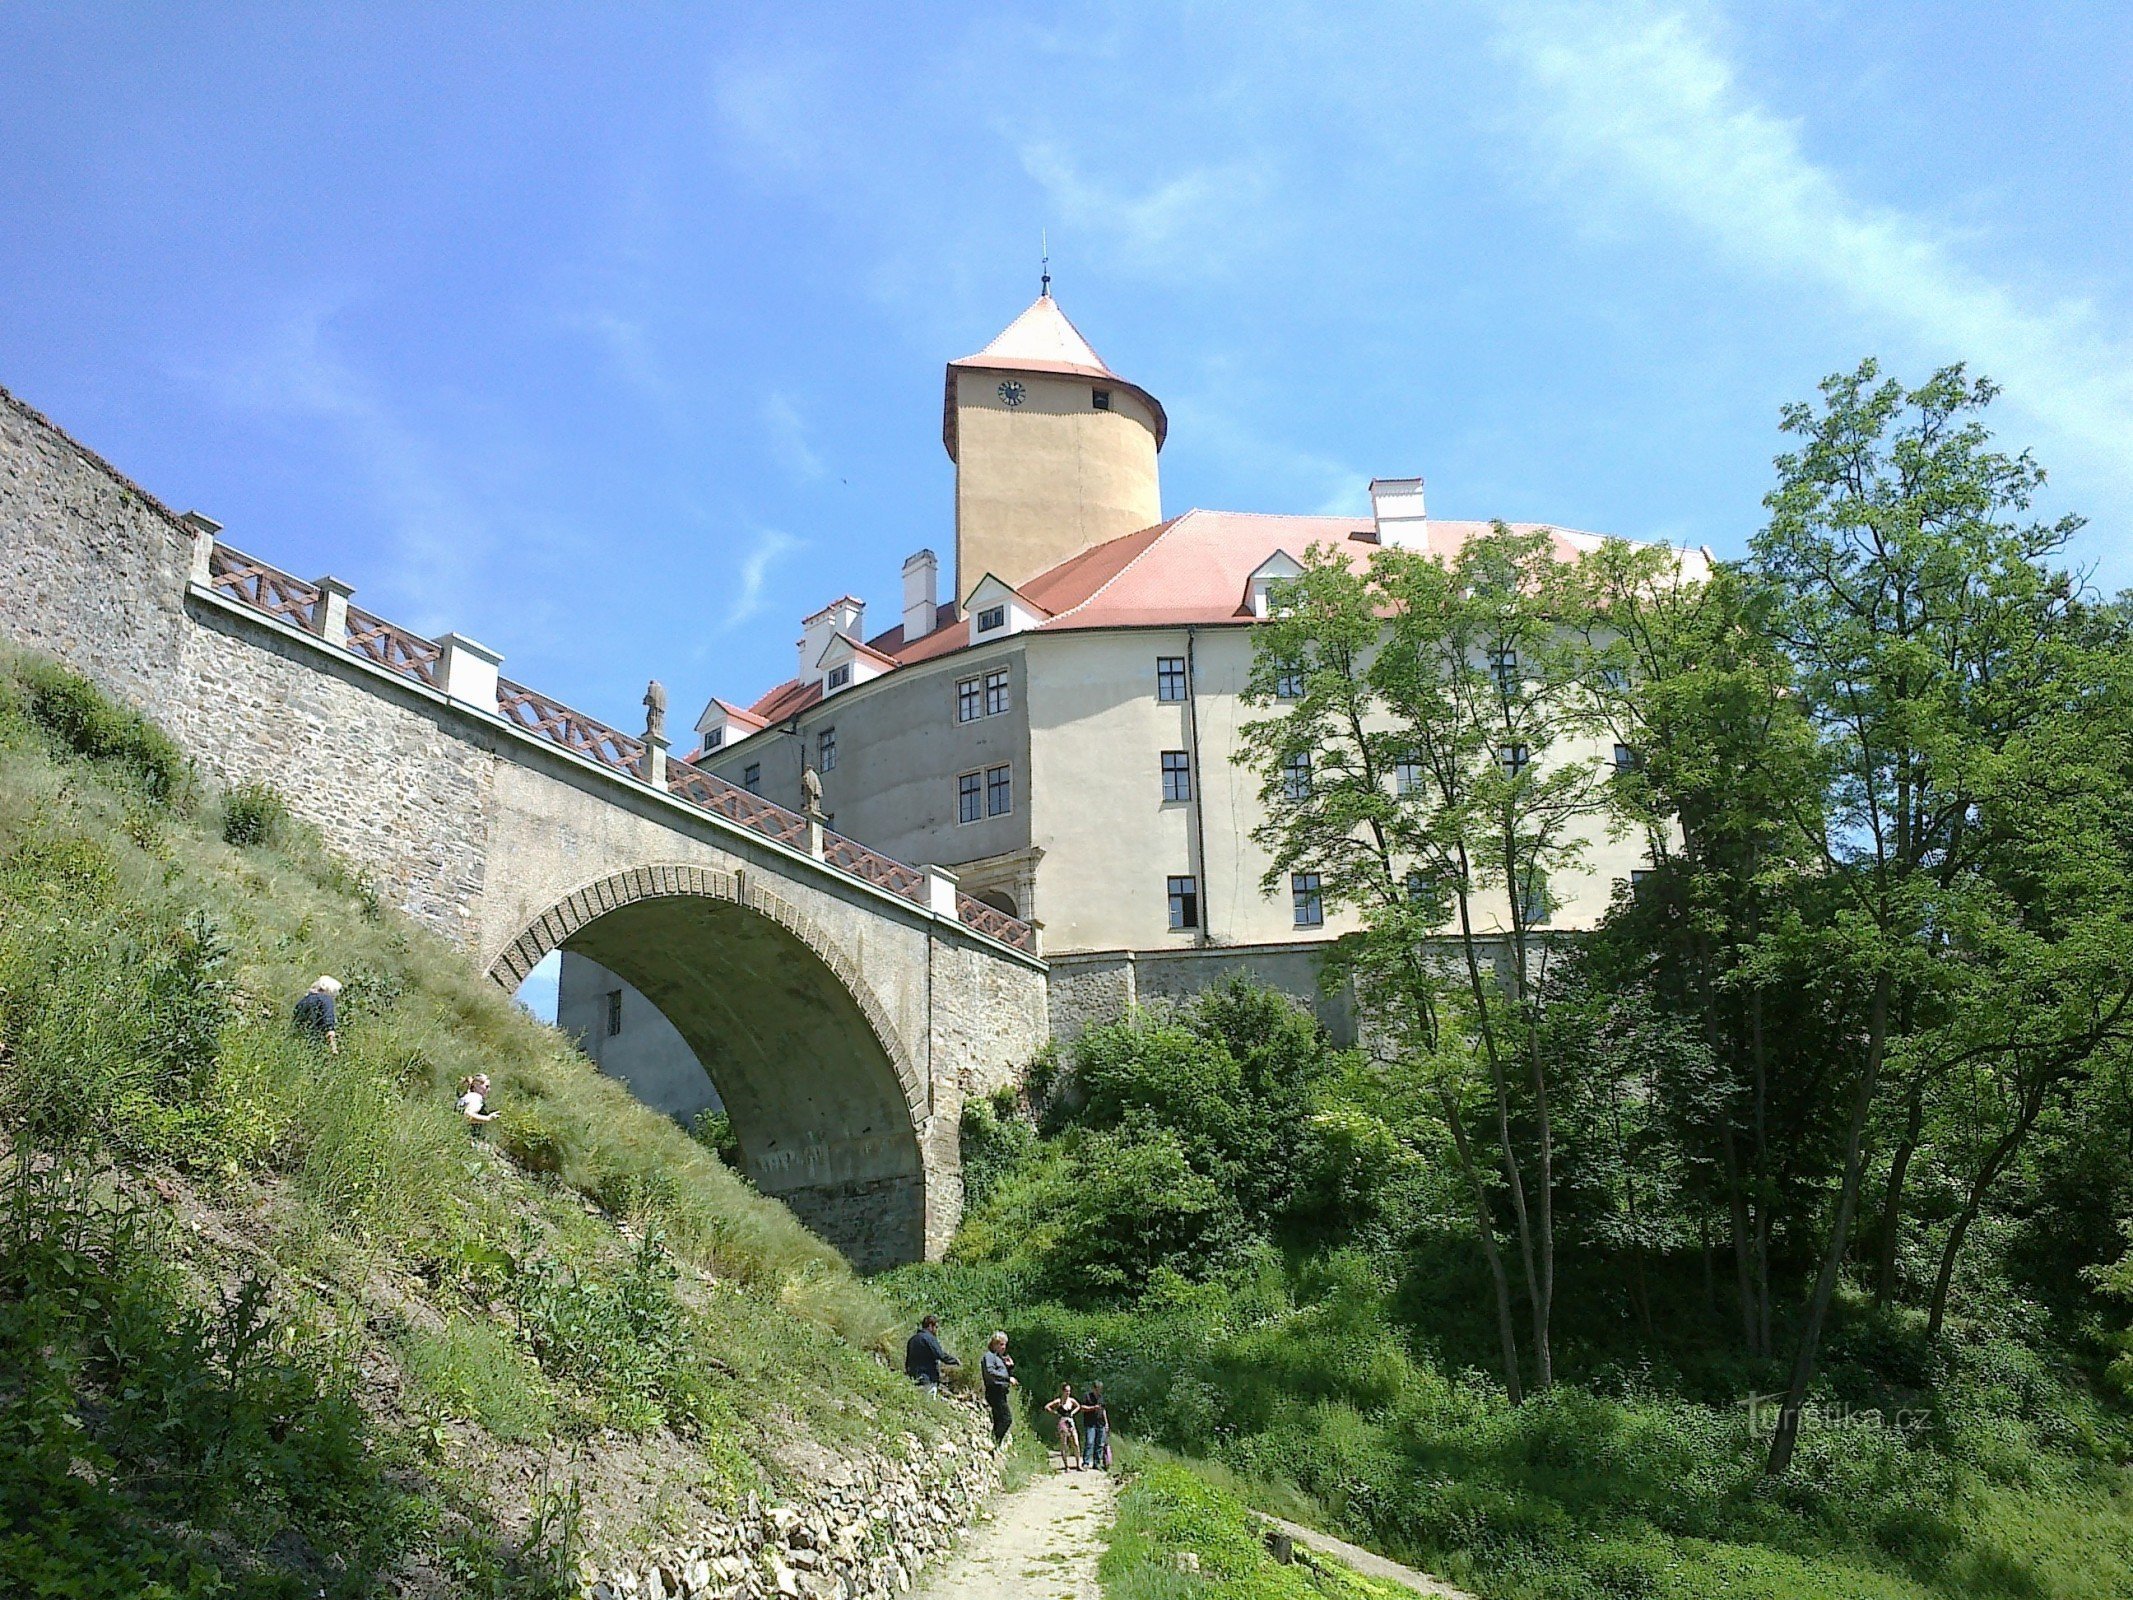 Pogled odozdo na dvorac